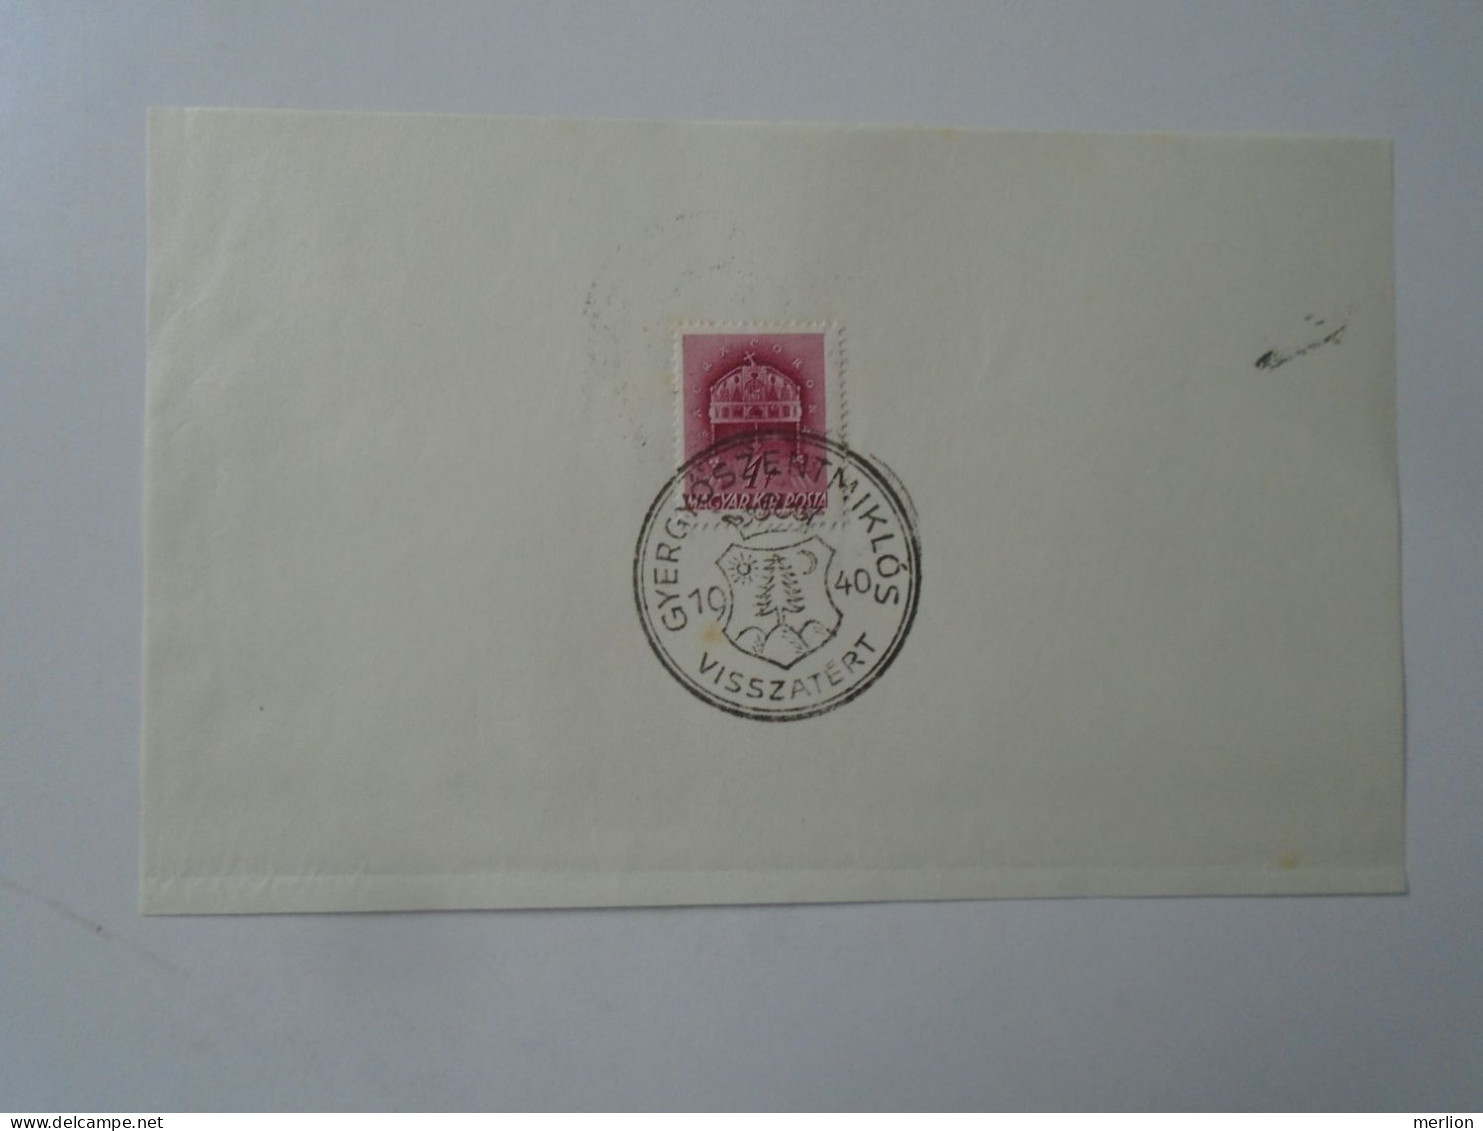 ZA451.43  Hungary -GYERGYÓSZENTMIKLÓS   Visszatért -Commemorative Postmark 1940 - Postmark Collection